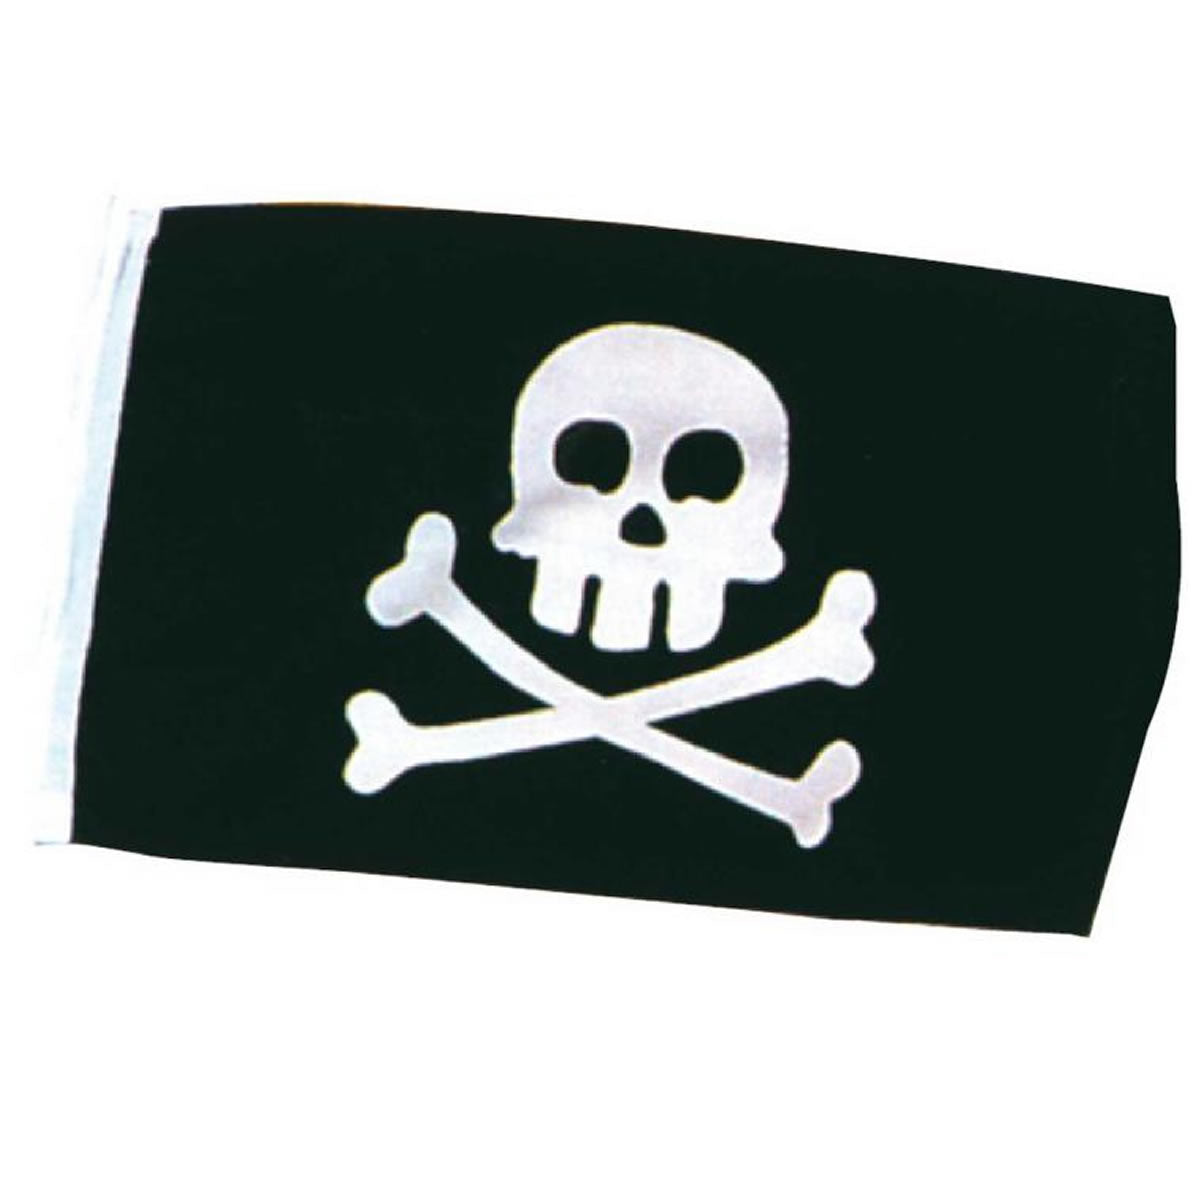 Bandiera pirata cm 30x45 per barca gommone imbarcazione